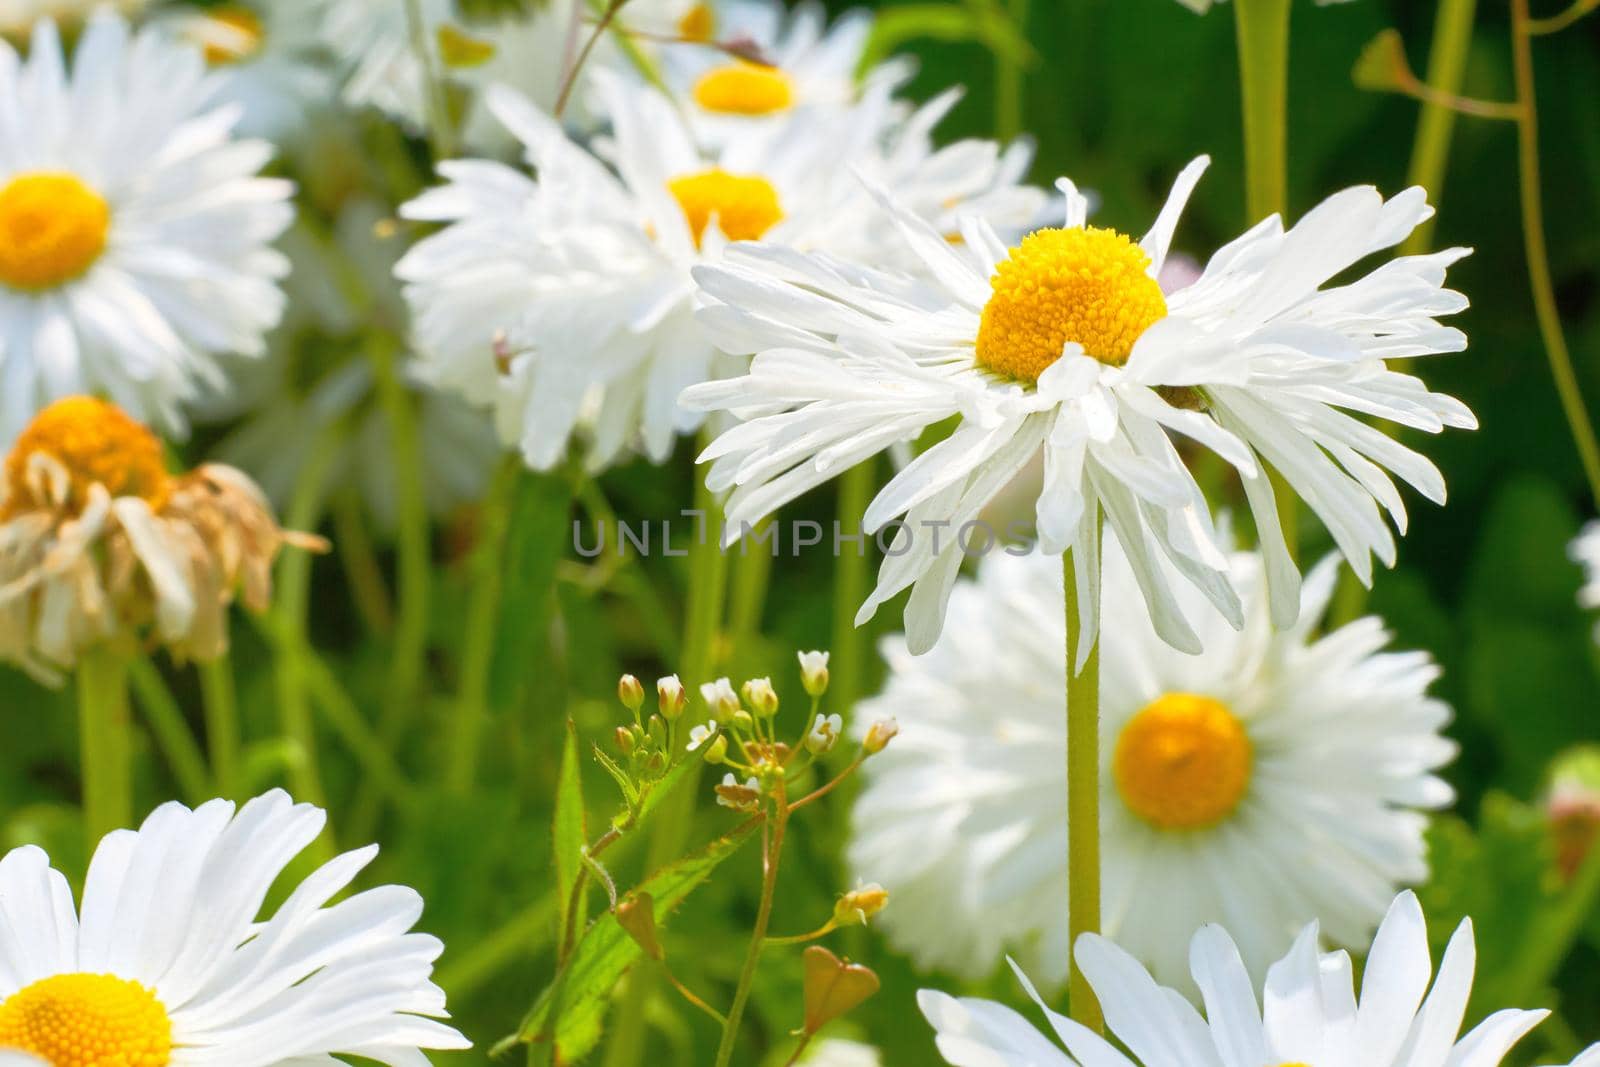 Wonderful white daisies among lush fresh greenery by jovani68